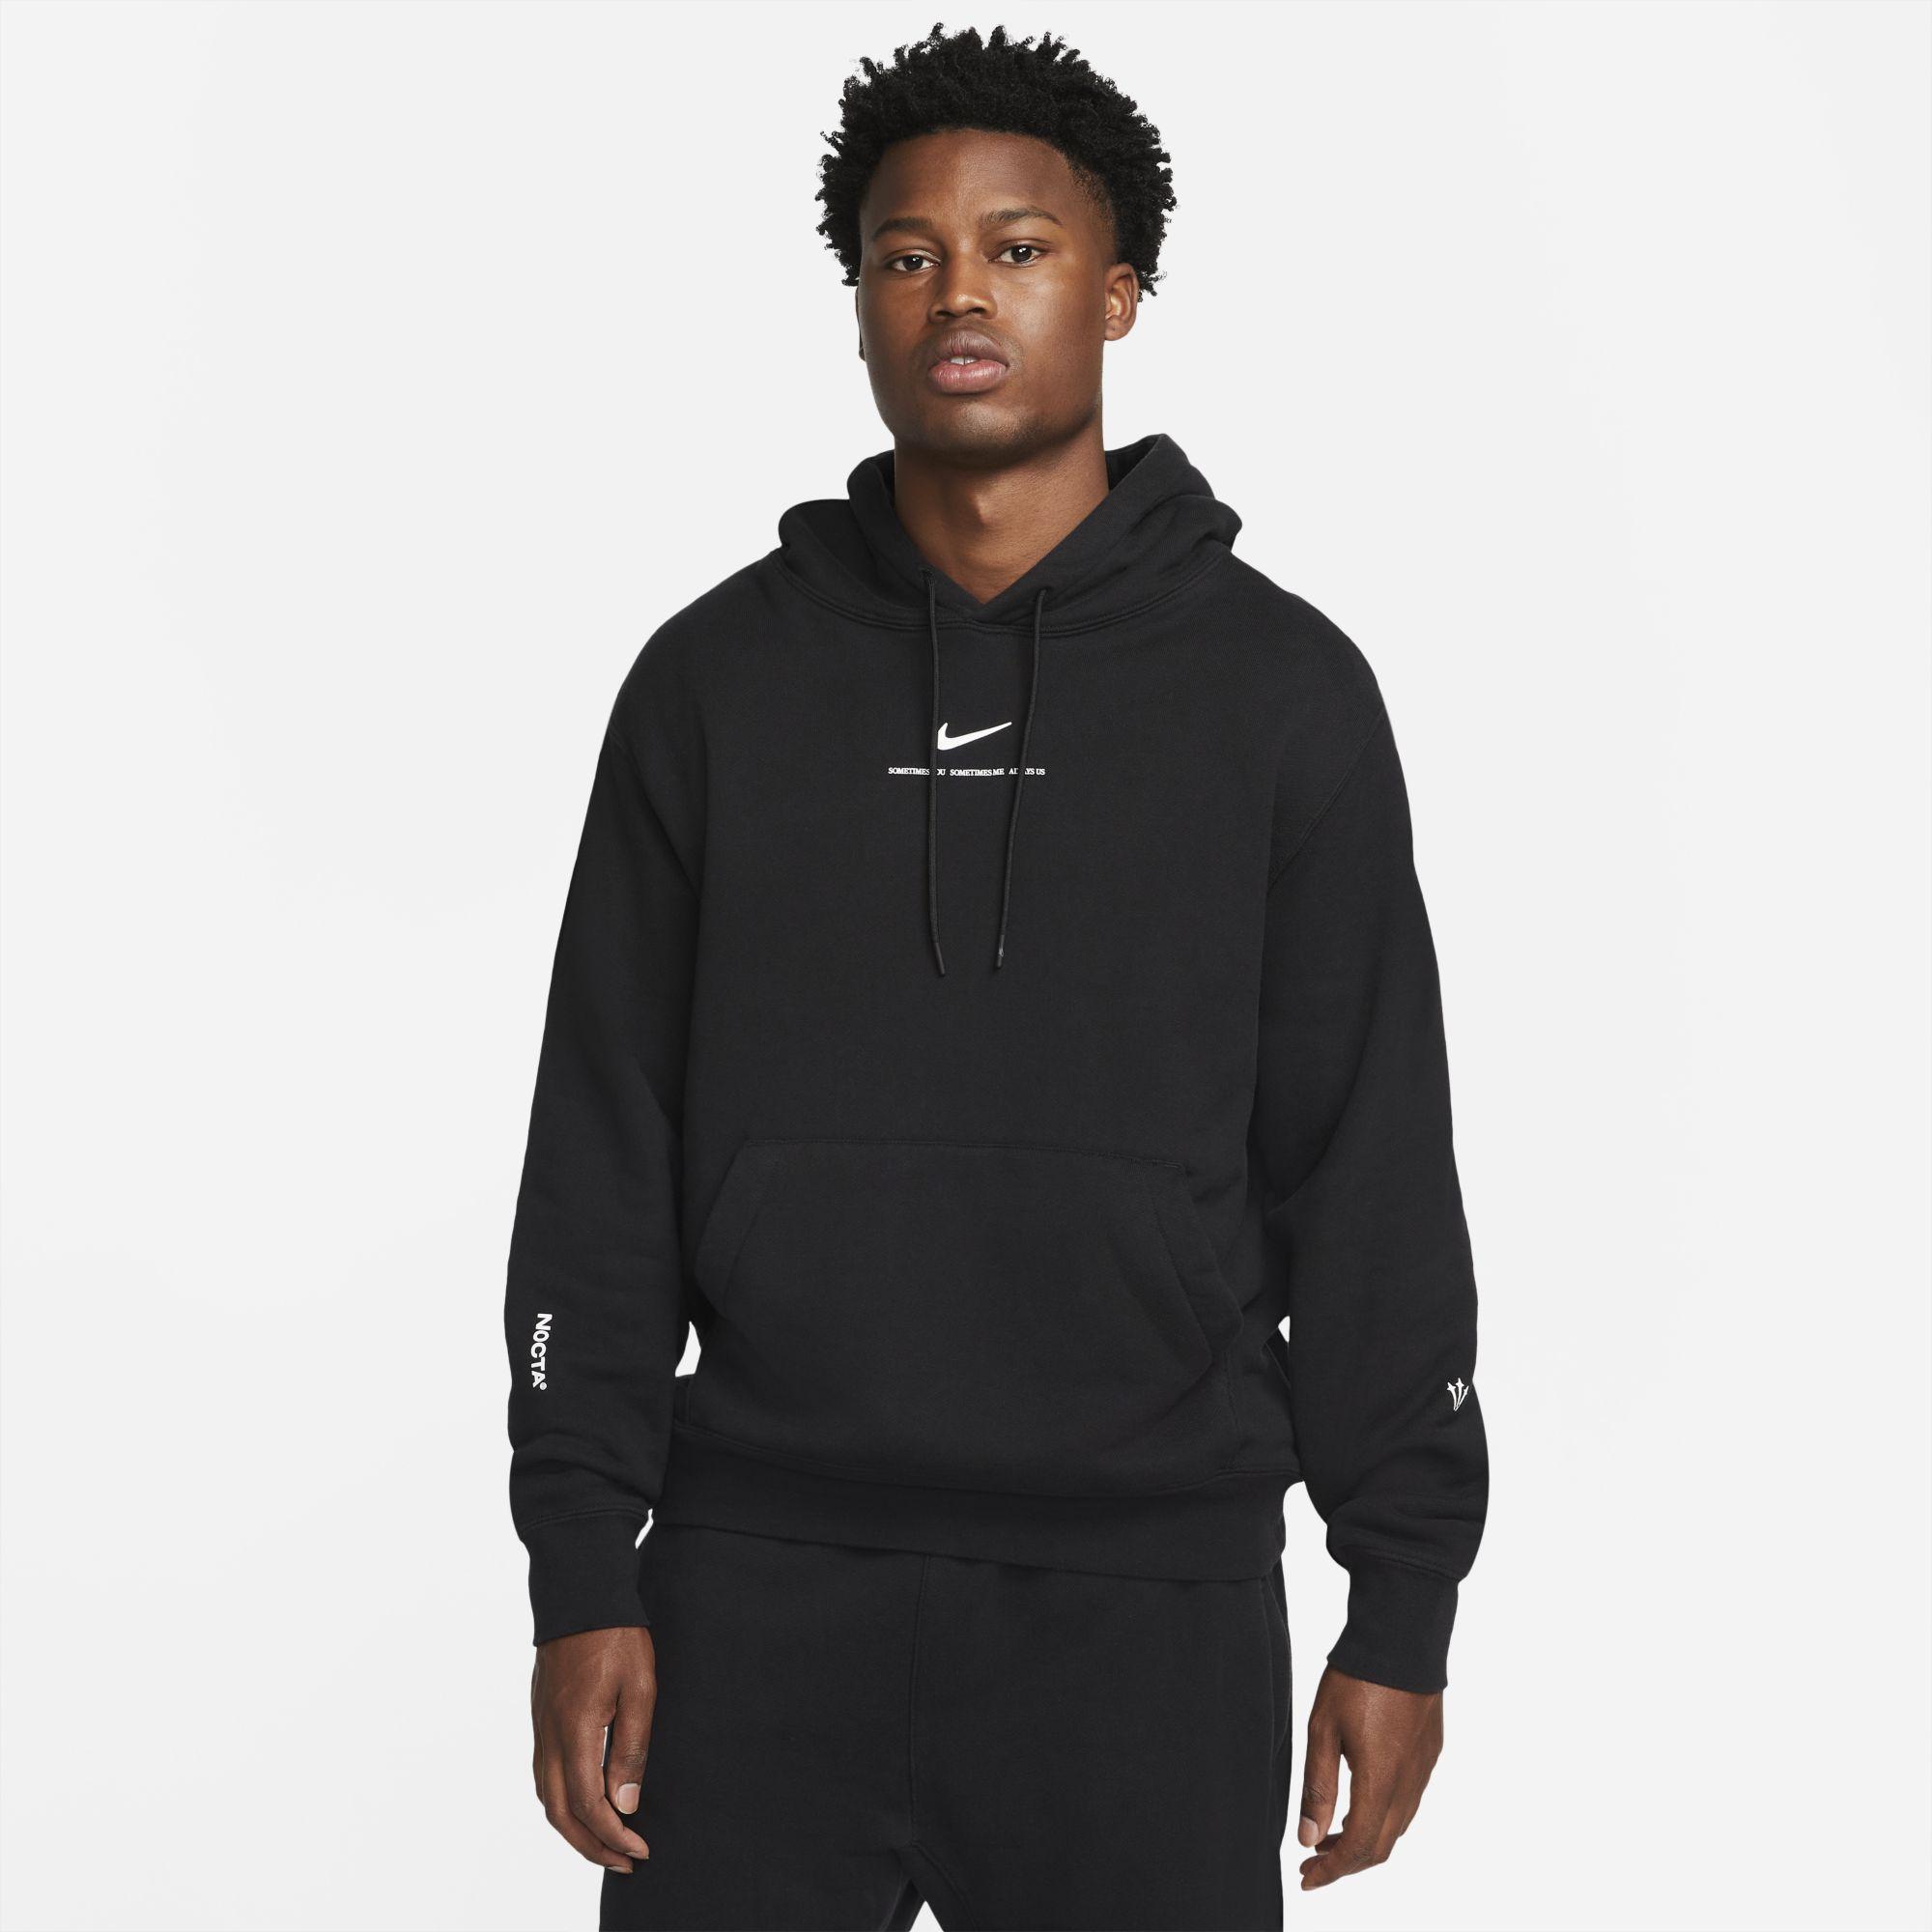 Nike Basketball hoodie in black